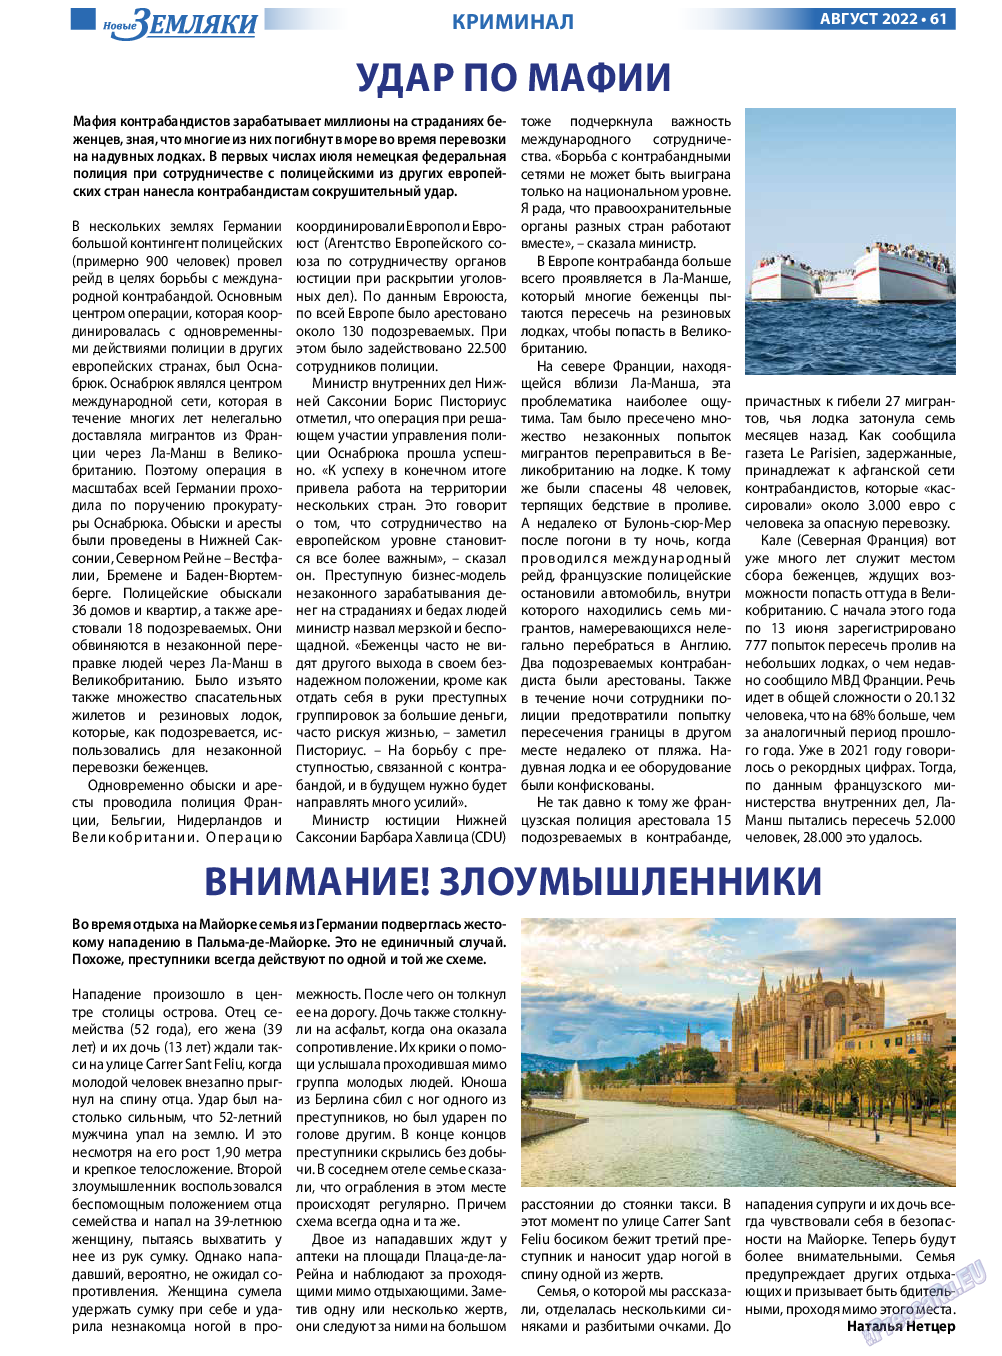 Новые Земляки, газета. 2022 №8 стр.61